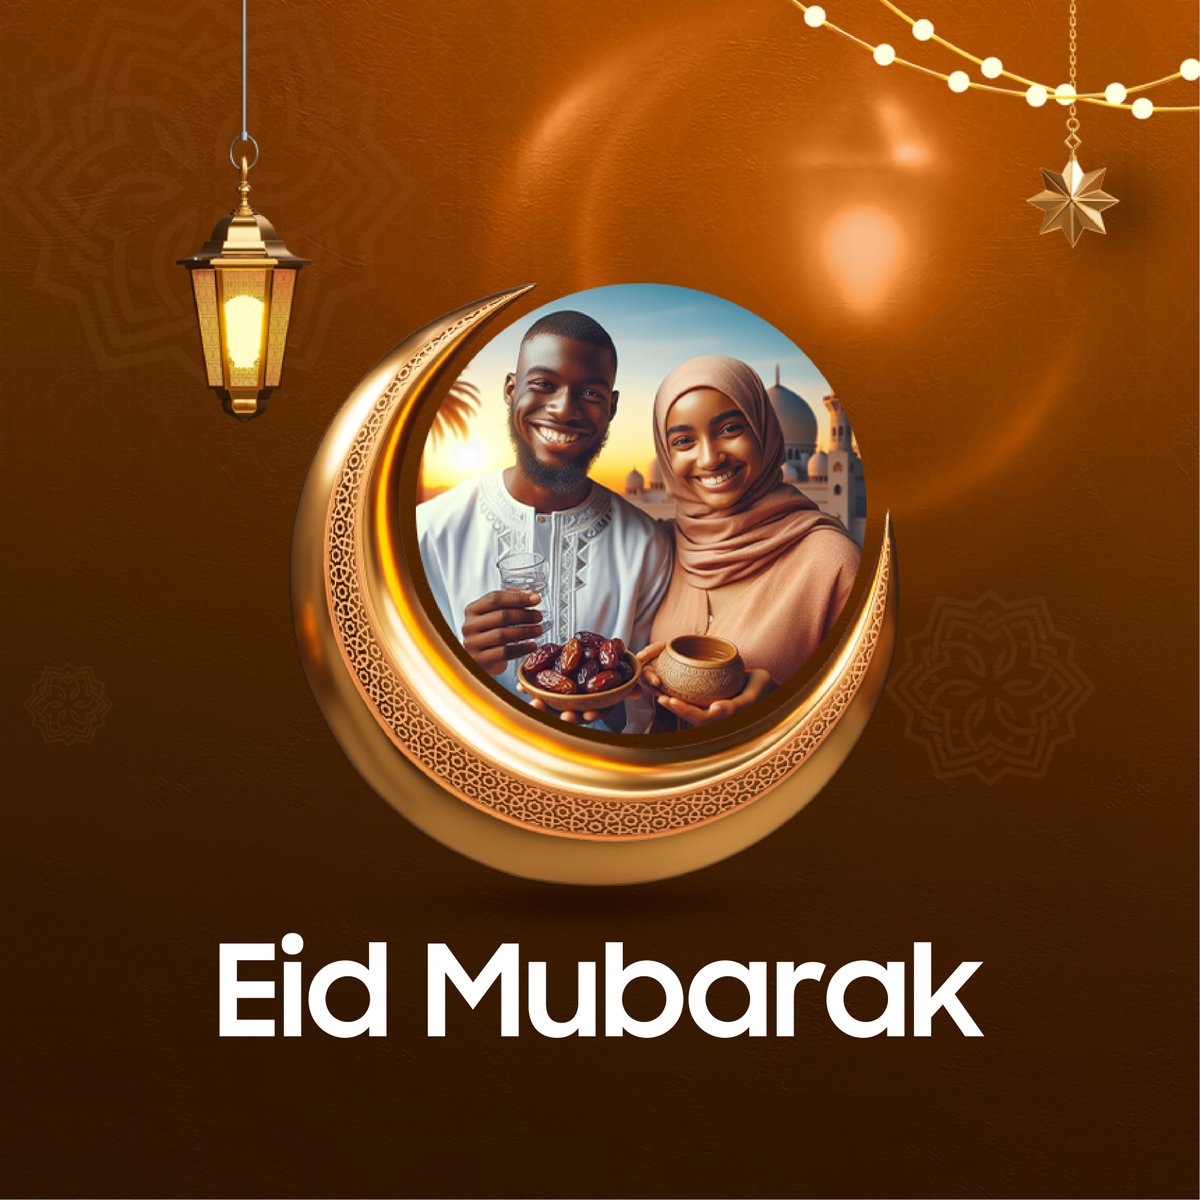 Eid Mubarak to the entire Muslim community.